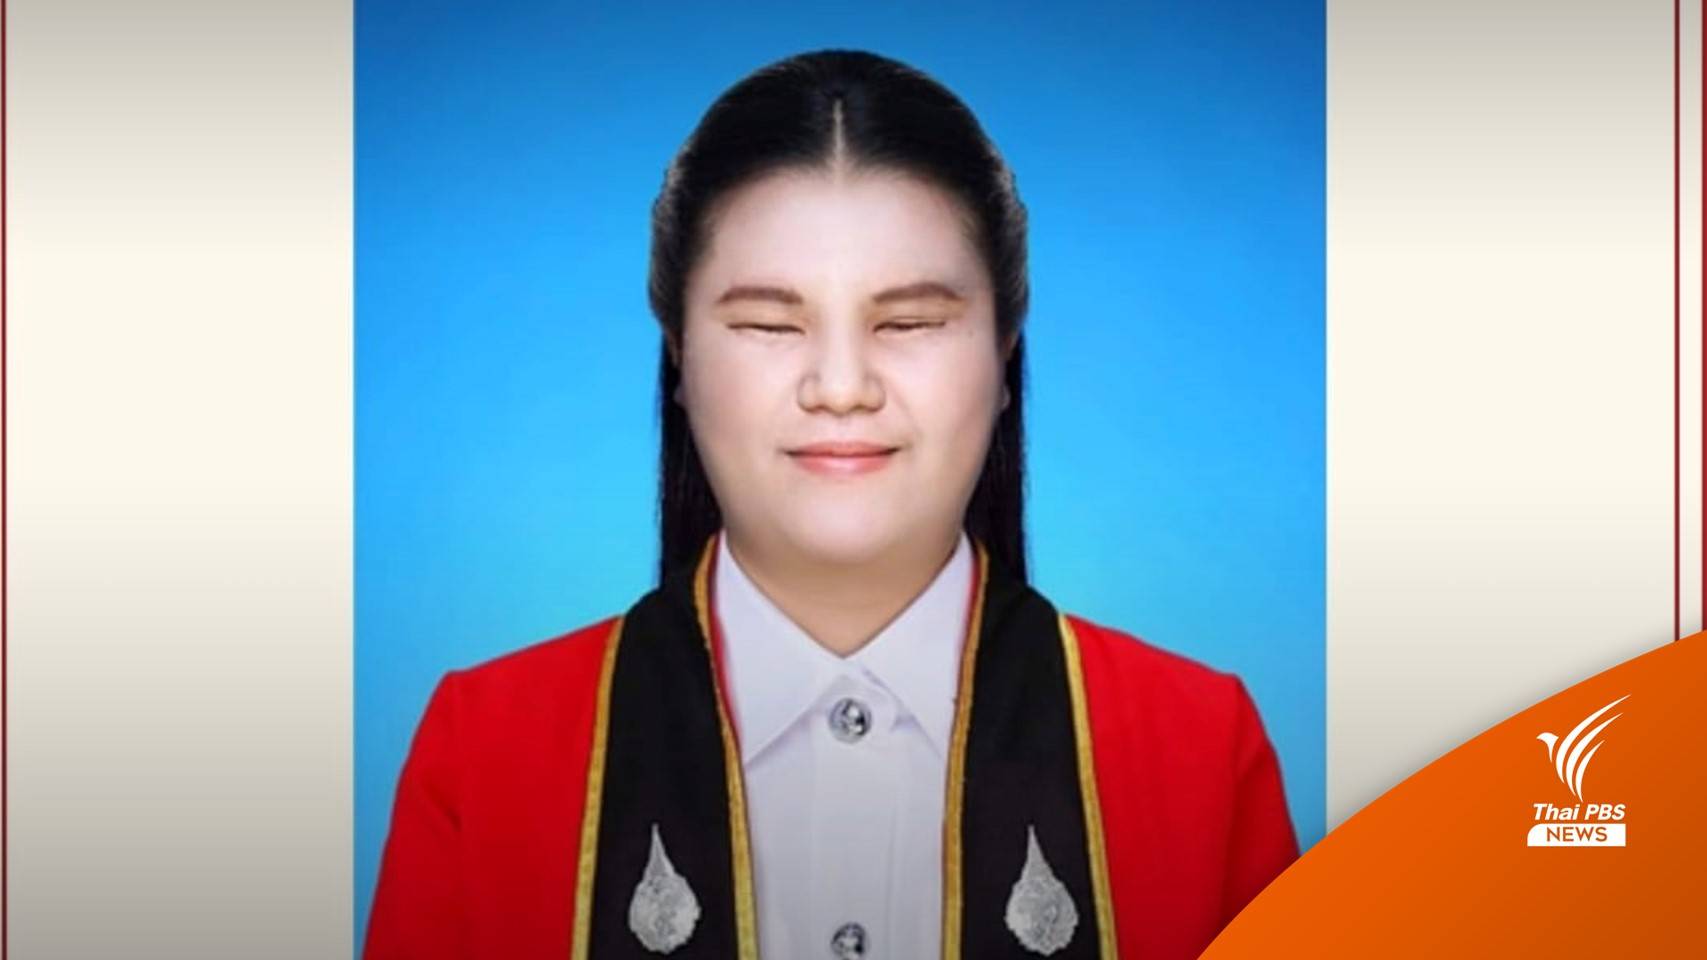 คนแรก "น้องอ้อม" บัณฑิตภาษาจีนพิการทางสายตา ผู้ไม่ท้อเรียนตามความฝัน